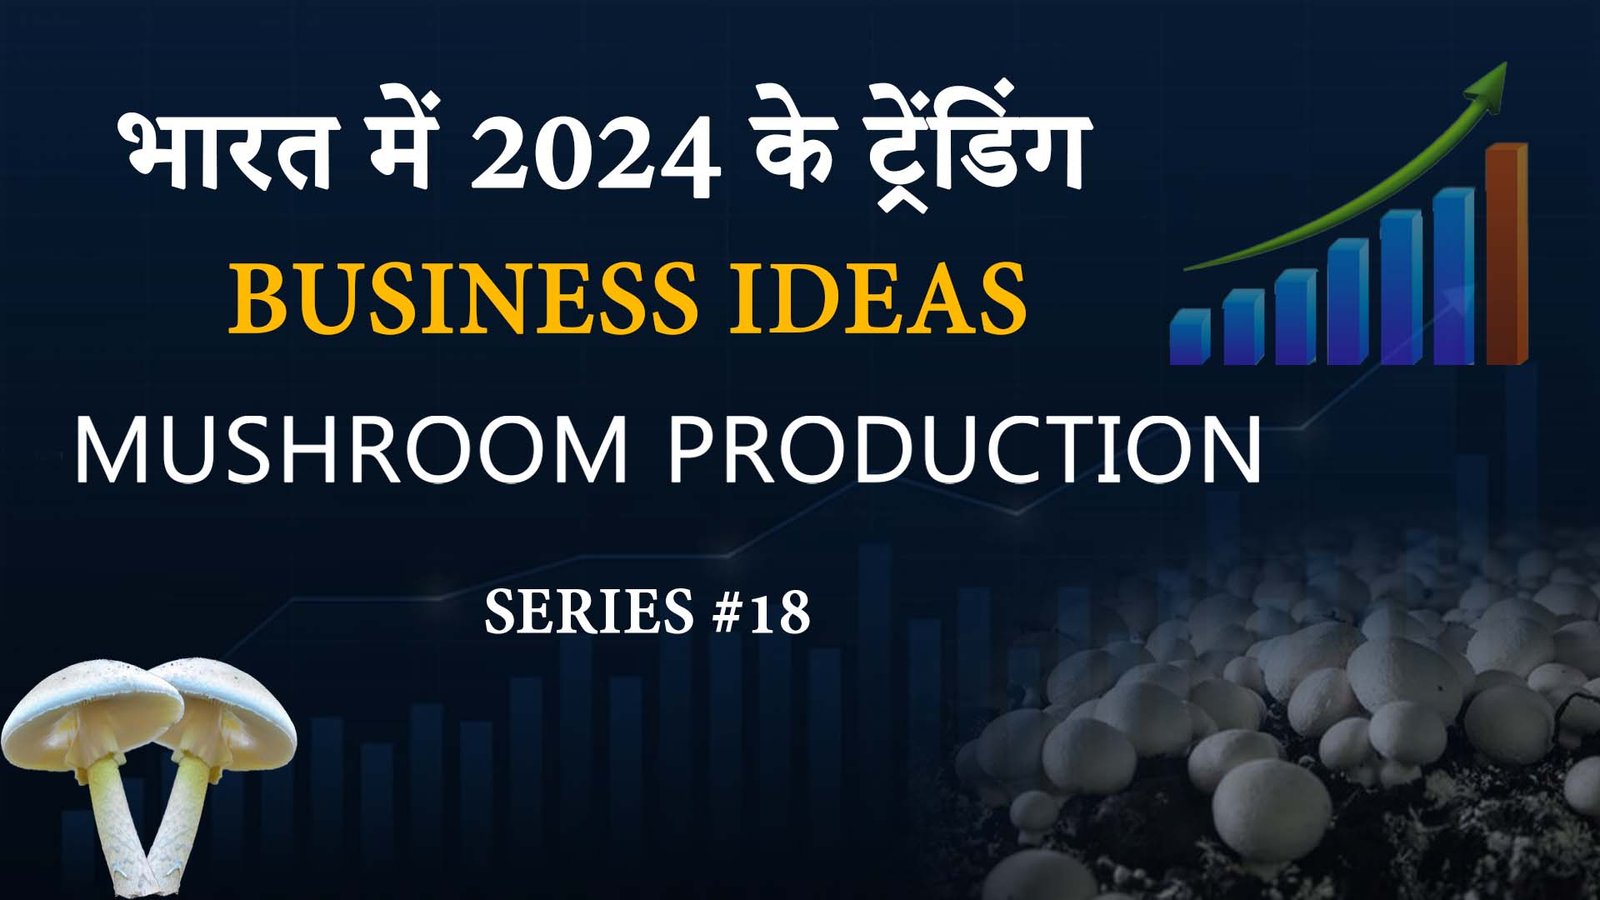 भारत में 2024 के ट्रेंडिंग Business Ideas: 🍄 Mushroom Production - अच्छा Startup विचार series #18